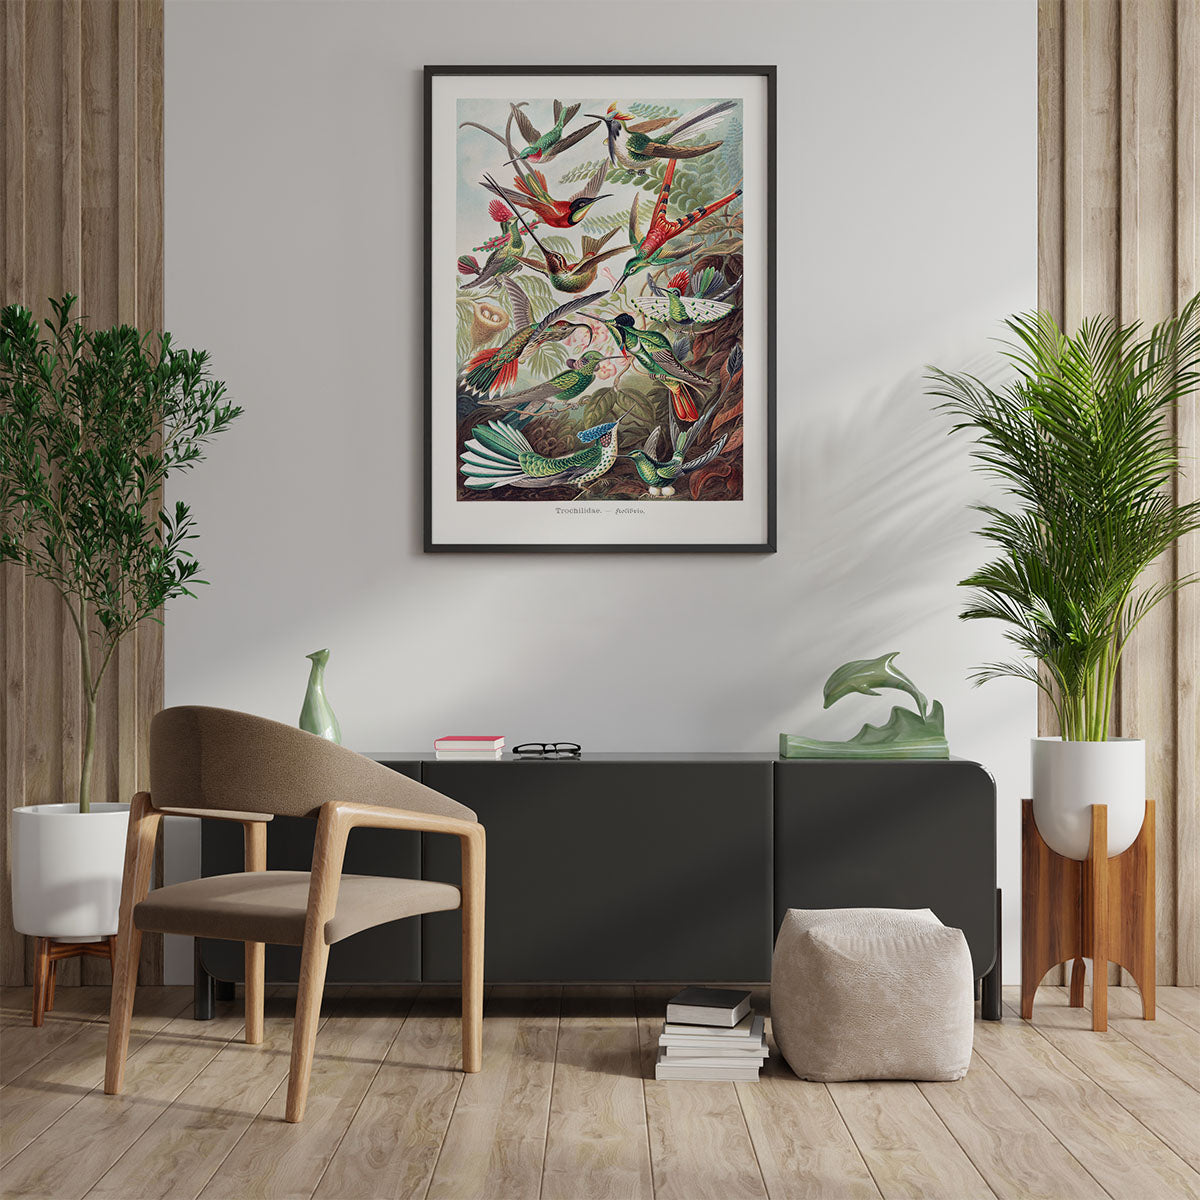 Plakat med Hummingbirds/kolibrier på væg i stue